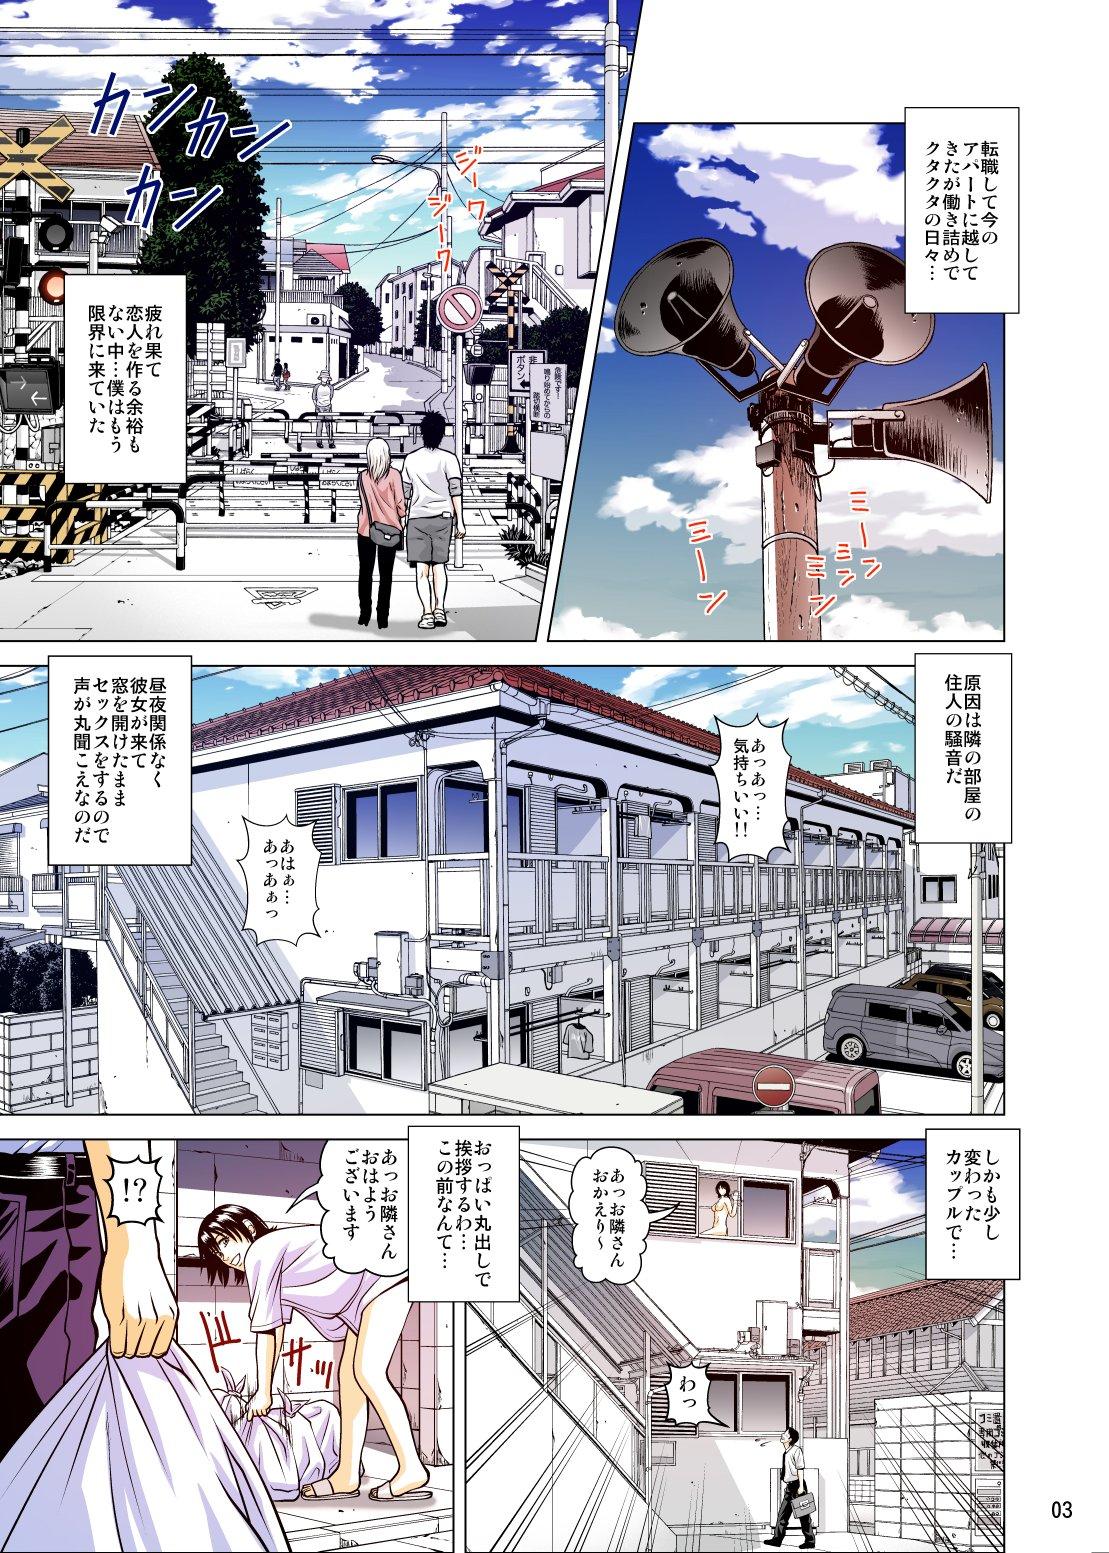 Camshow Mekakushi to Rental Kanojo Full Color Ban - Original Screaming - Page 4